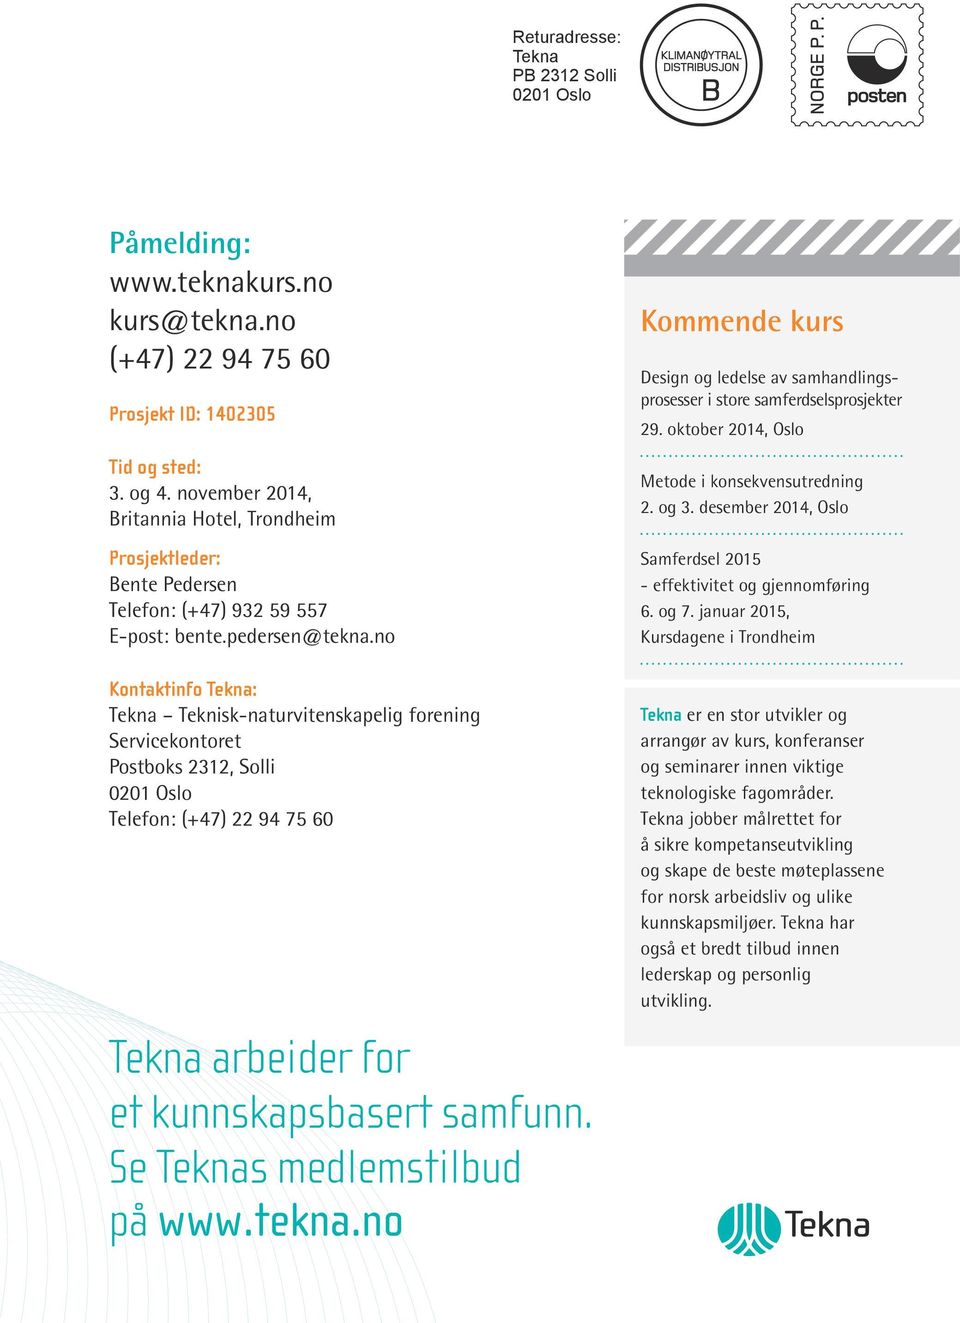 no Kontaktinfo Tekna: Servicekontoret Postboks 2312, Solli 0201 Oslo Telefon: (+47) 22 94 75 60 Tekna arbeider for et kunnskapsbasert samfunn. Se Teknas medlemstilbud på www.tekna.